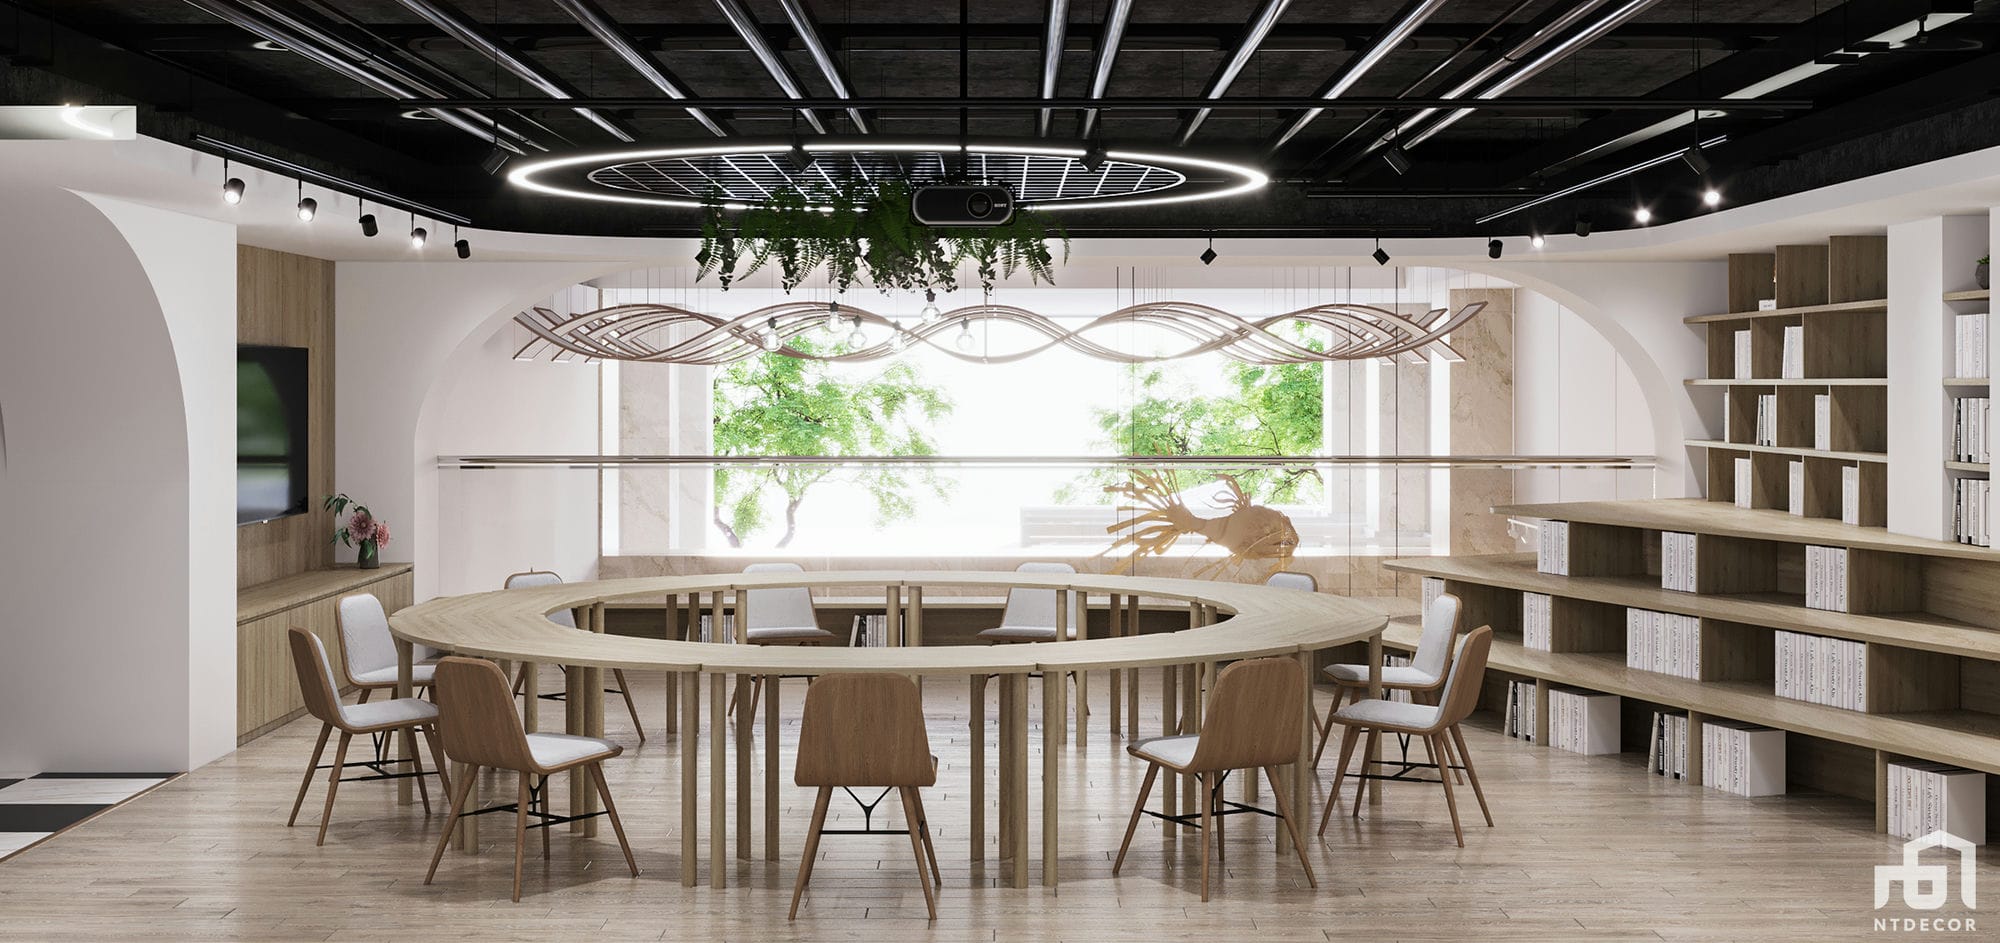 Library 3D Design of Ecolotus Coffee | NTDecor